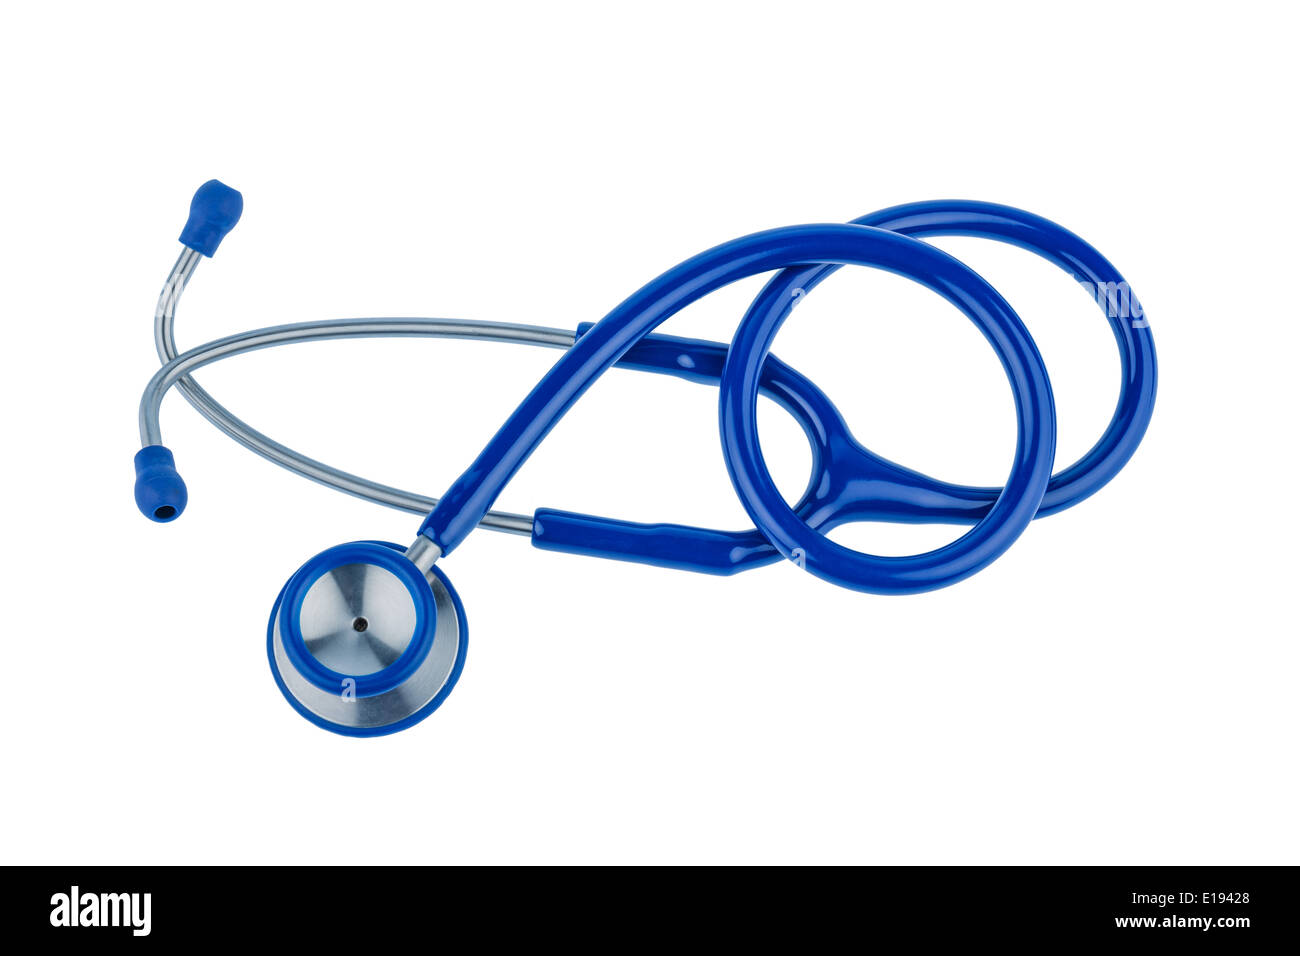 EIn blaues Stethoskop liegt auf einem weiﬂen Hintergrund. Stock Photo